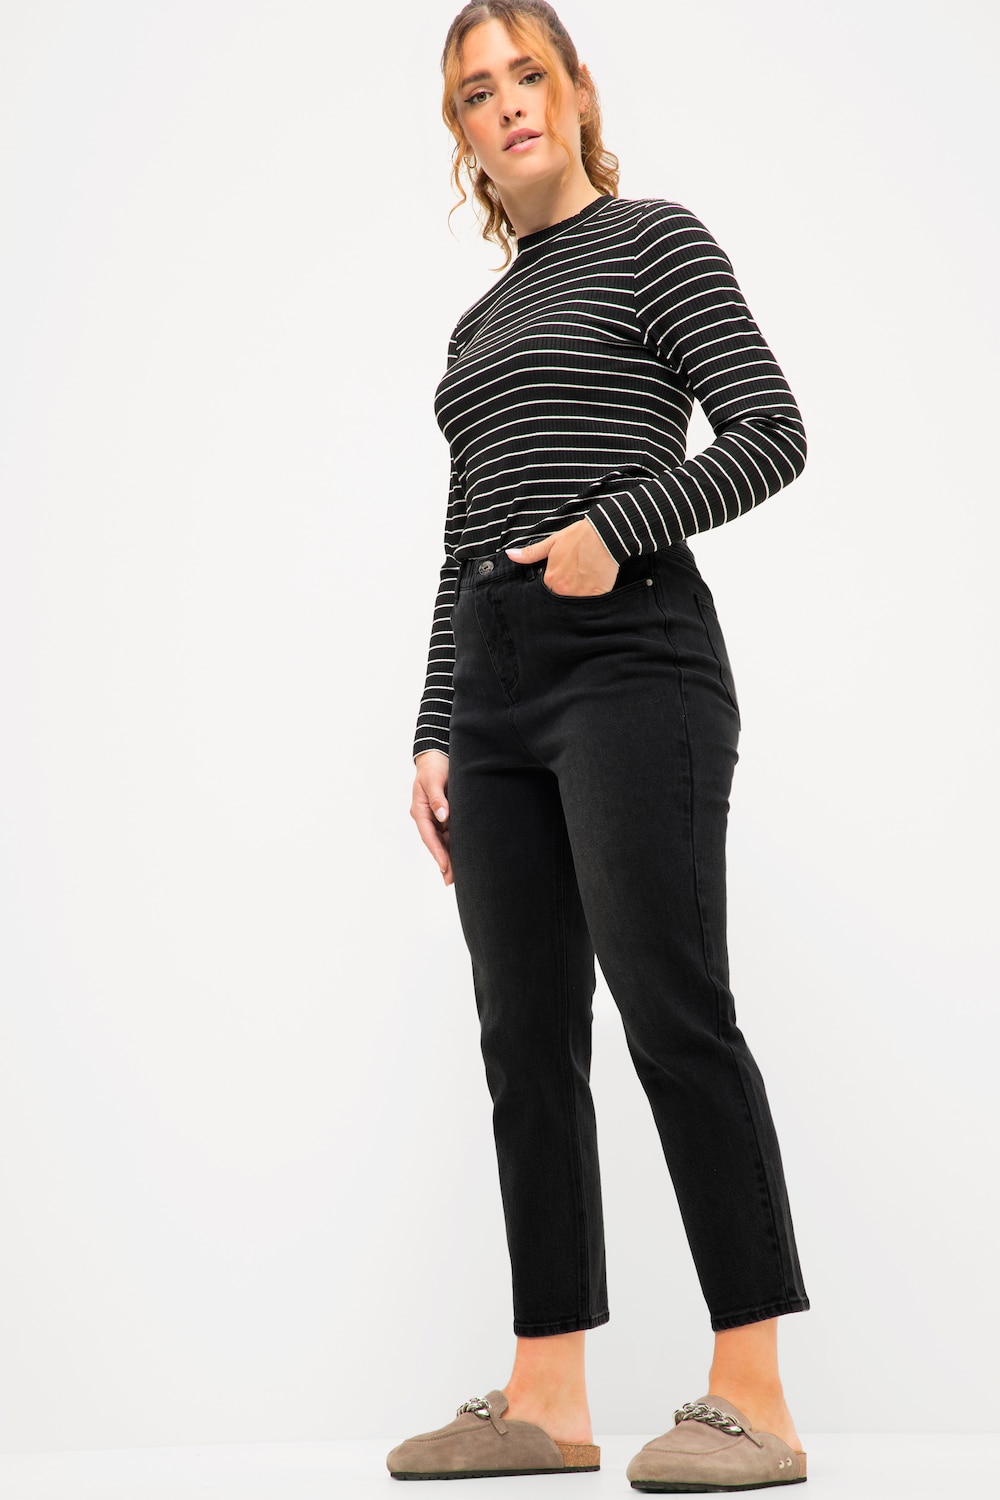 Grote Maten Mom jeans, Dames, zwart, Maat: 46, Katoen, Studio Untold